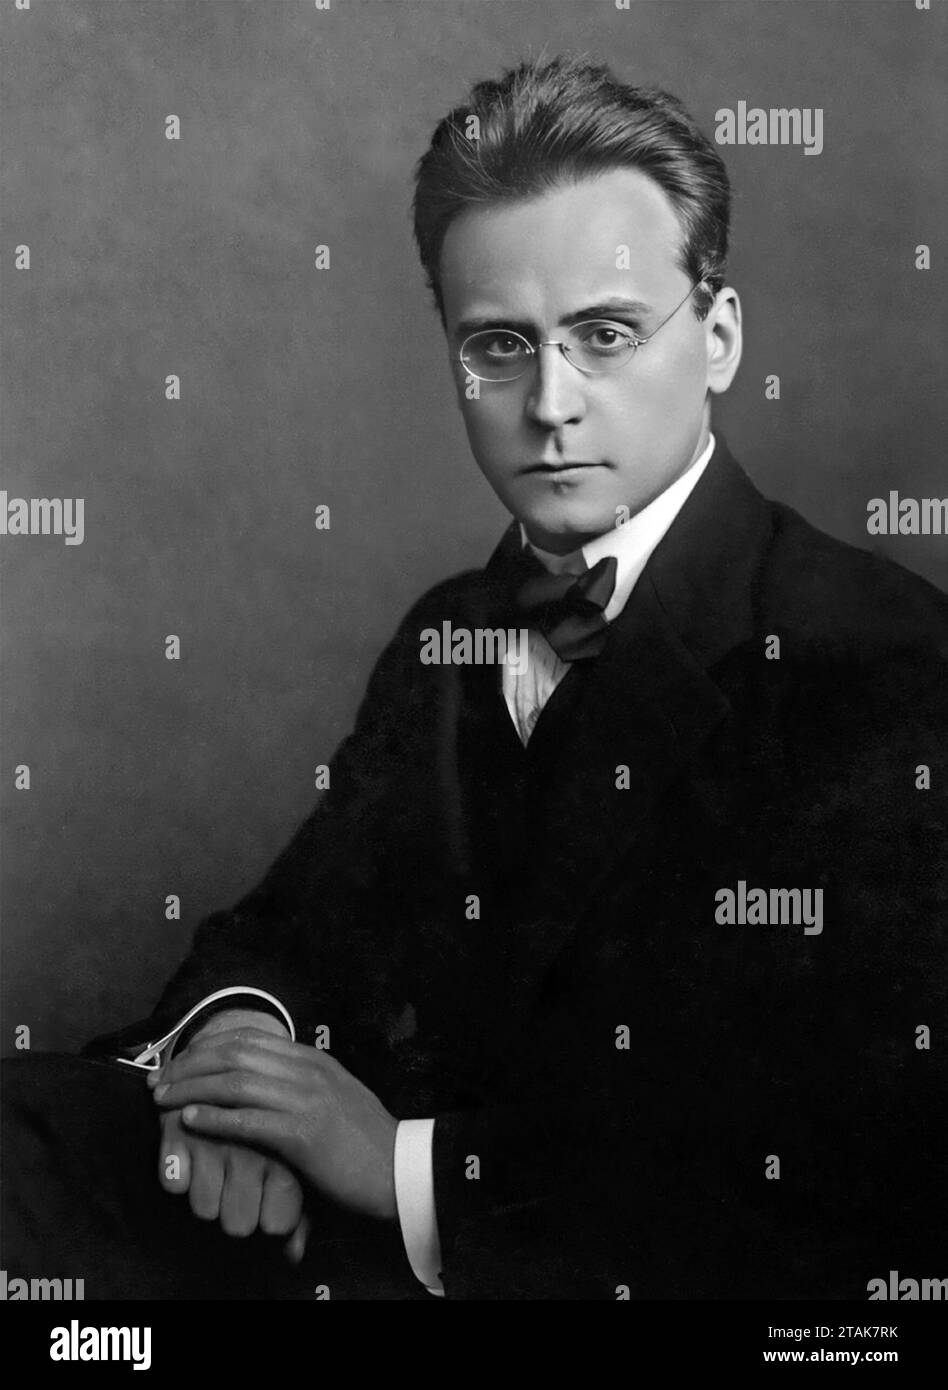 Anton Webern. Portrait of the Austrian composer and conductor Anton Friedrich Wilhelm von Webern (1883-1945), 1912 Stock Photo